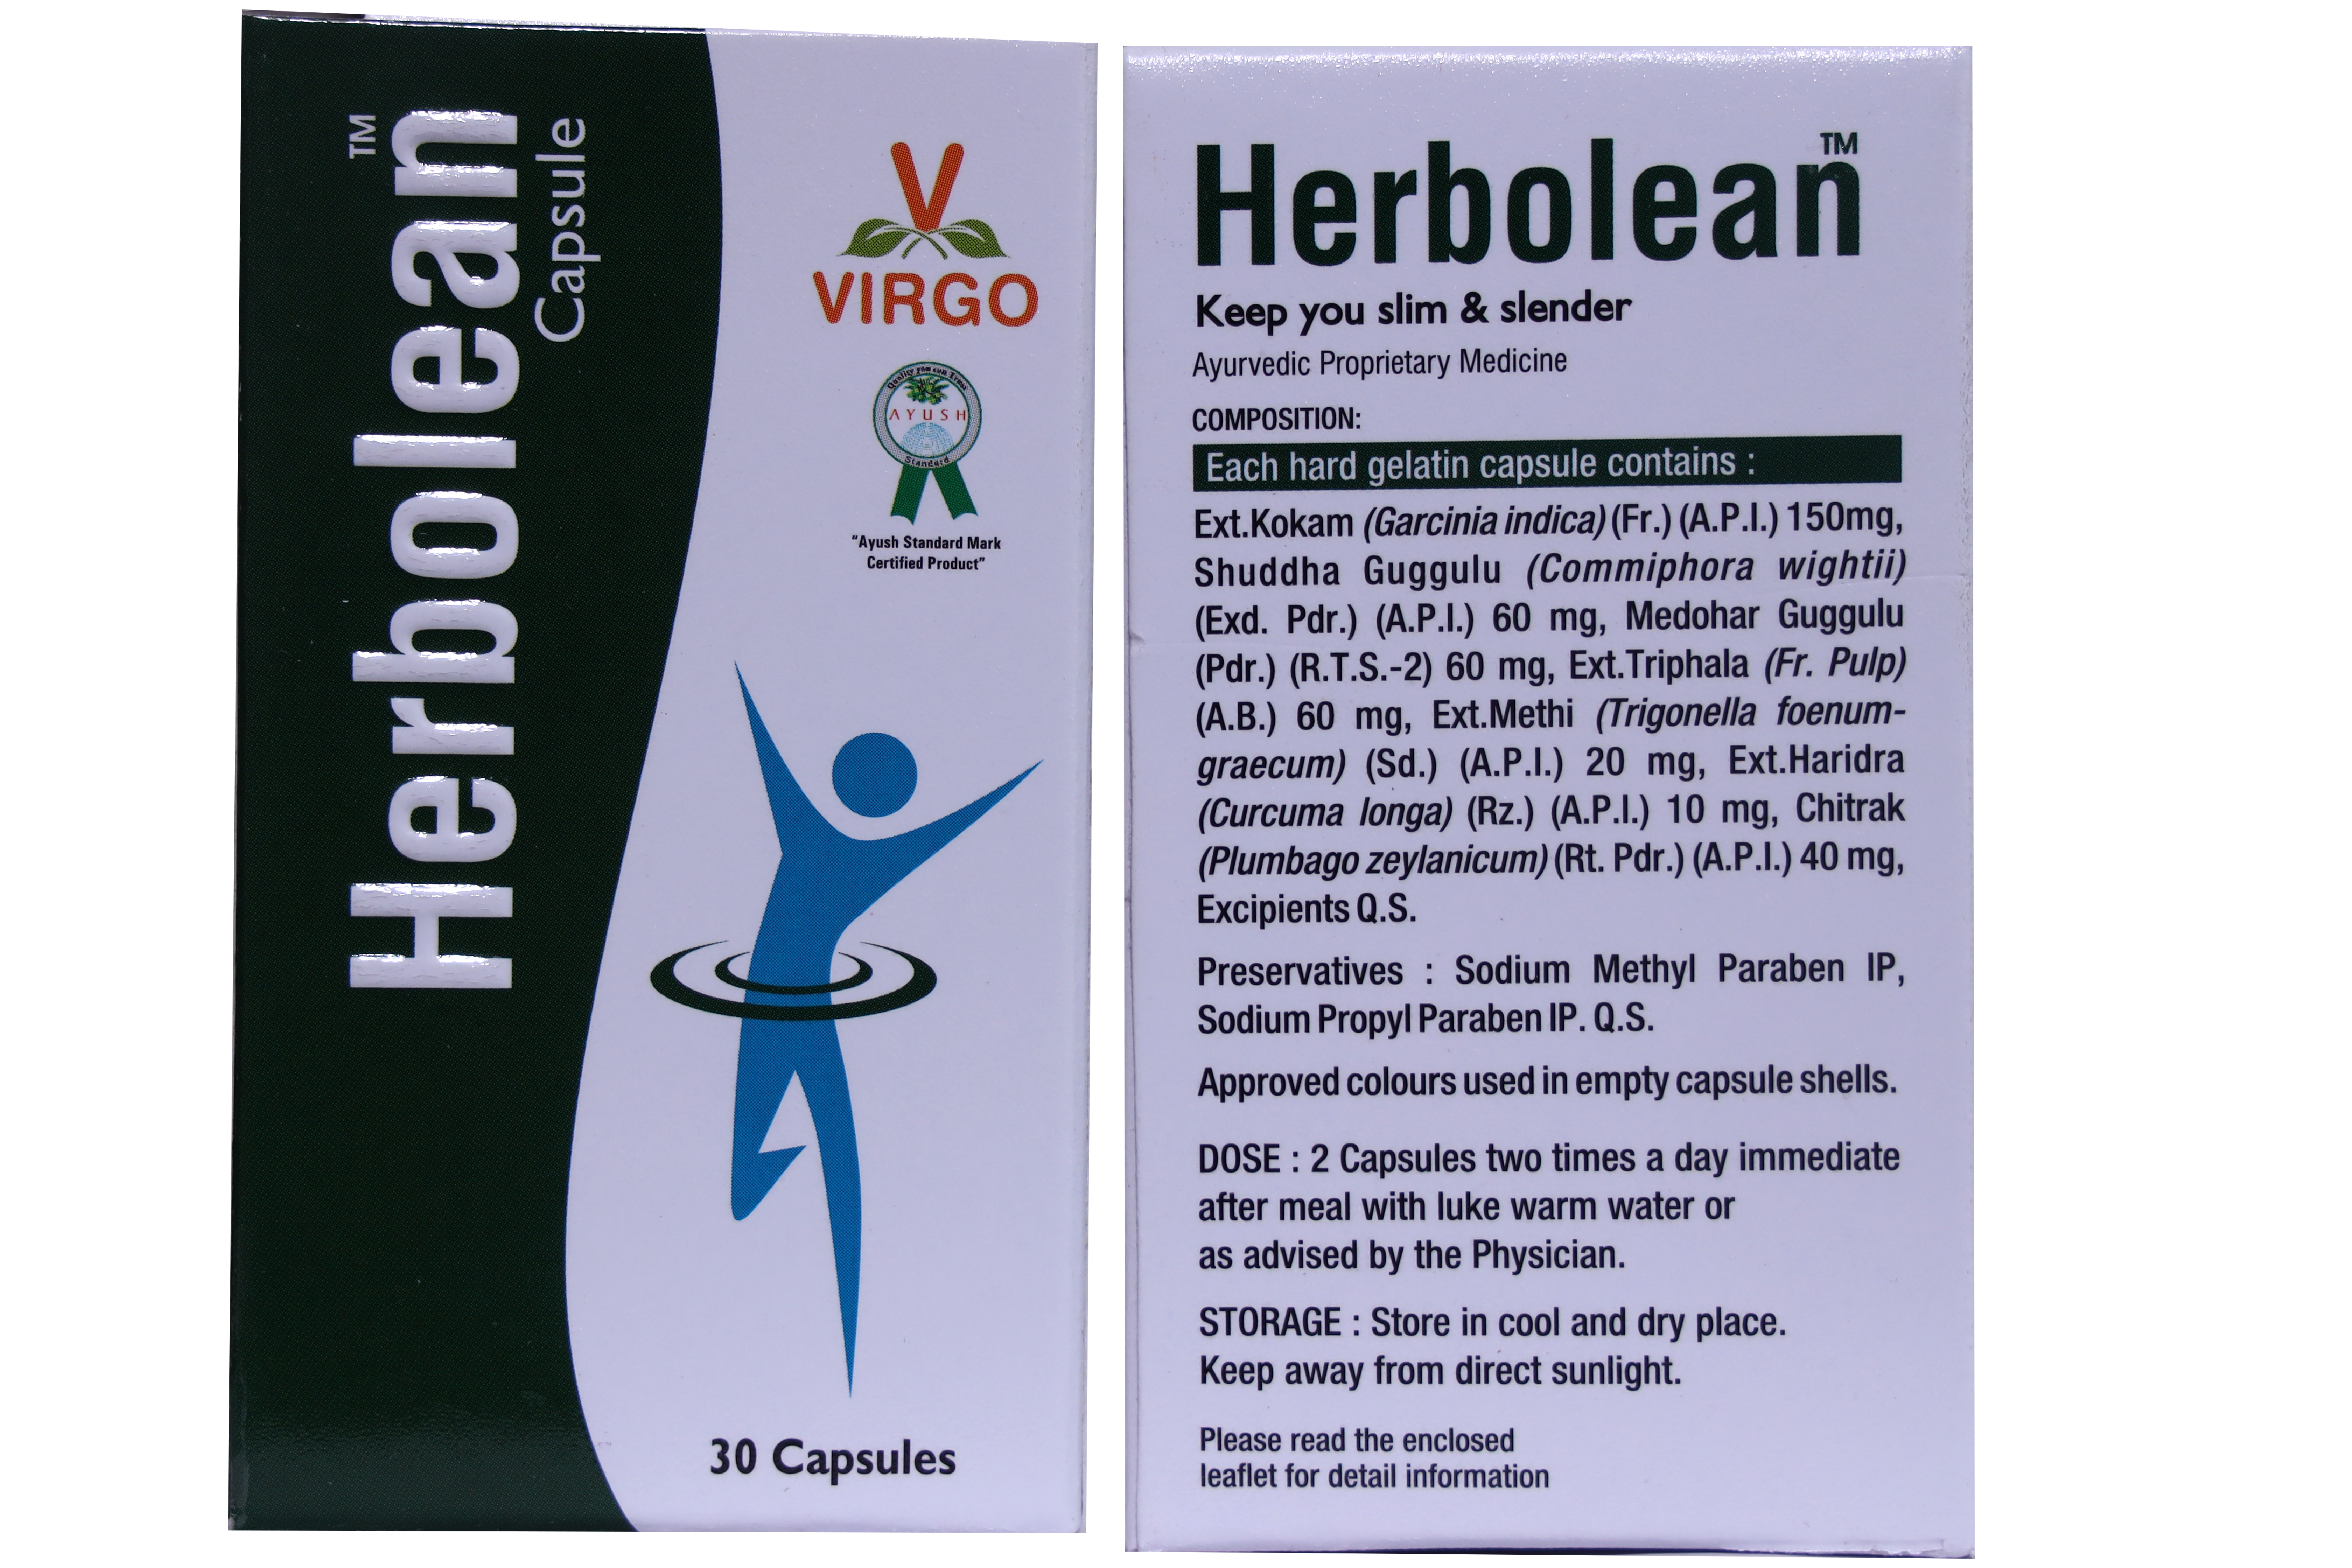 Buy Virgo Herbolean Capsule at Best Price Online